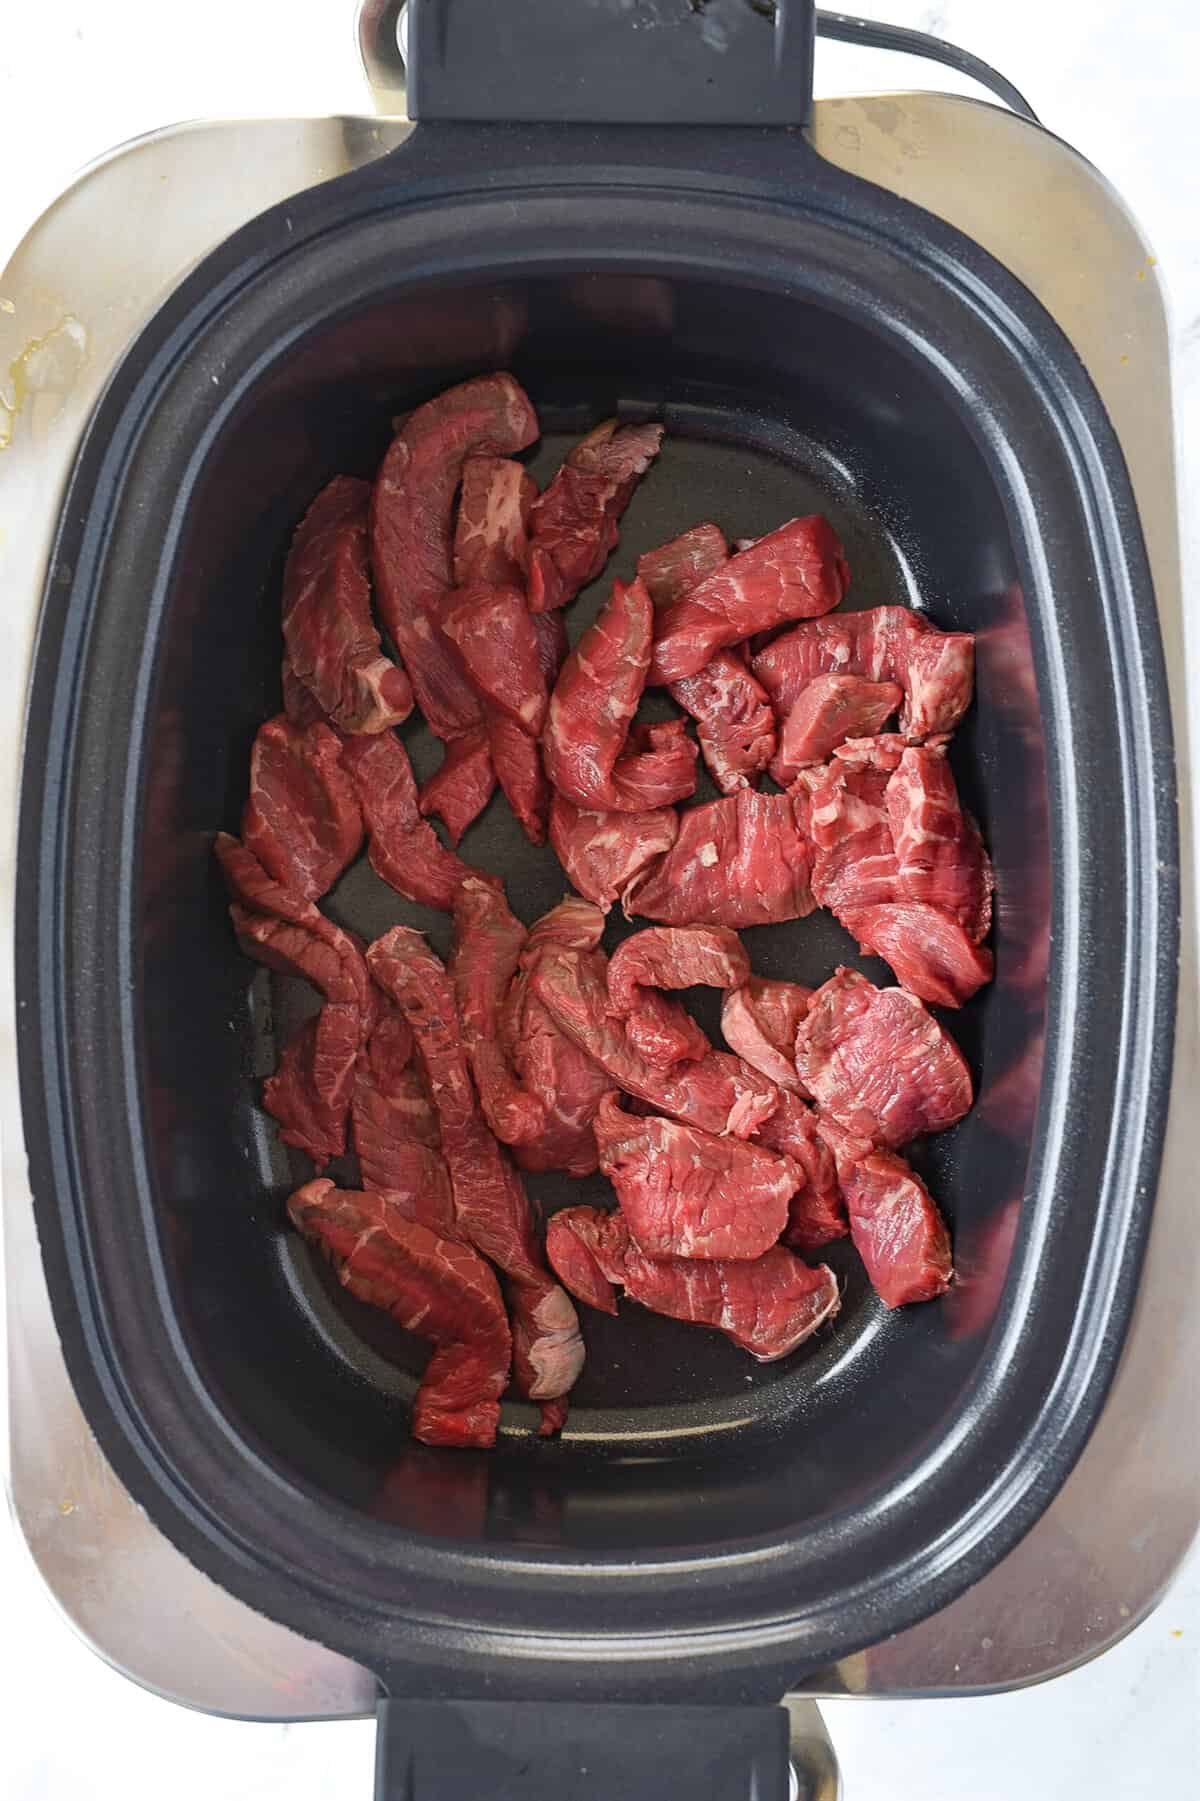 cut up steak in slow cooker
